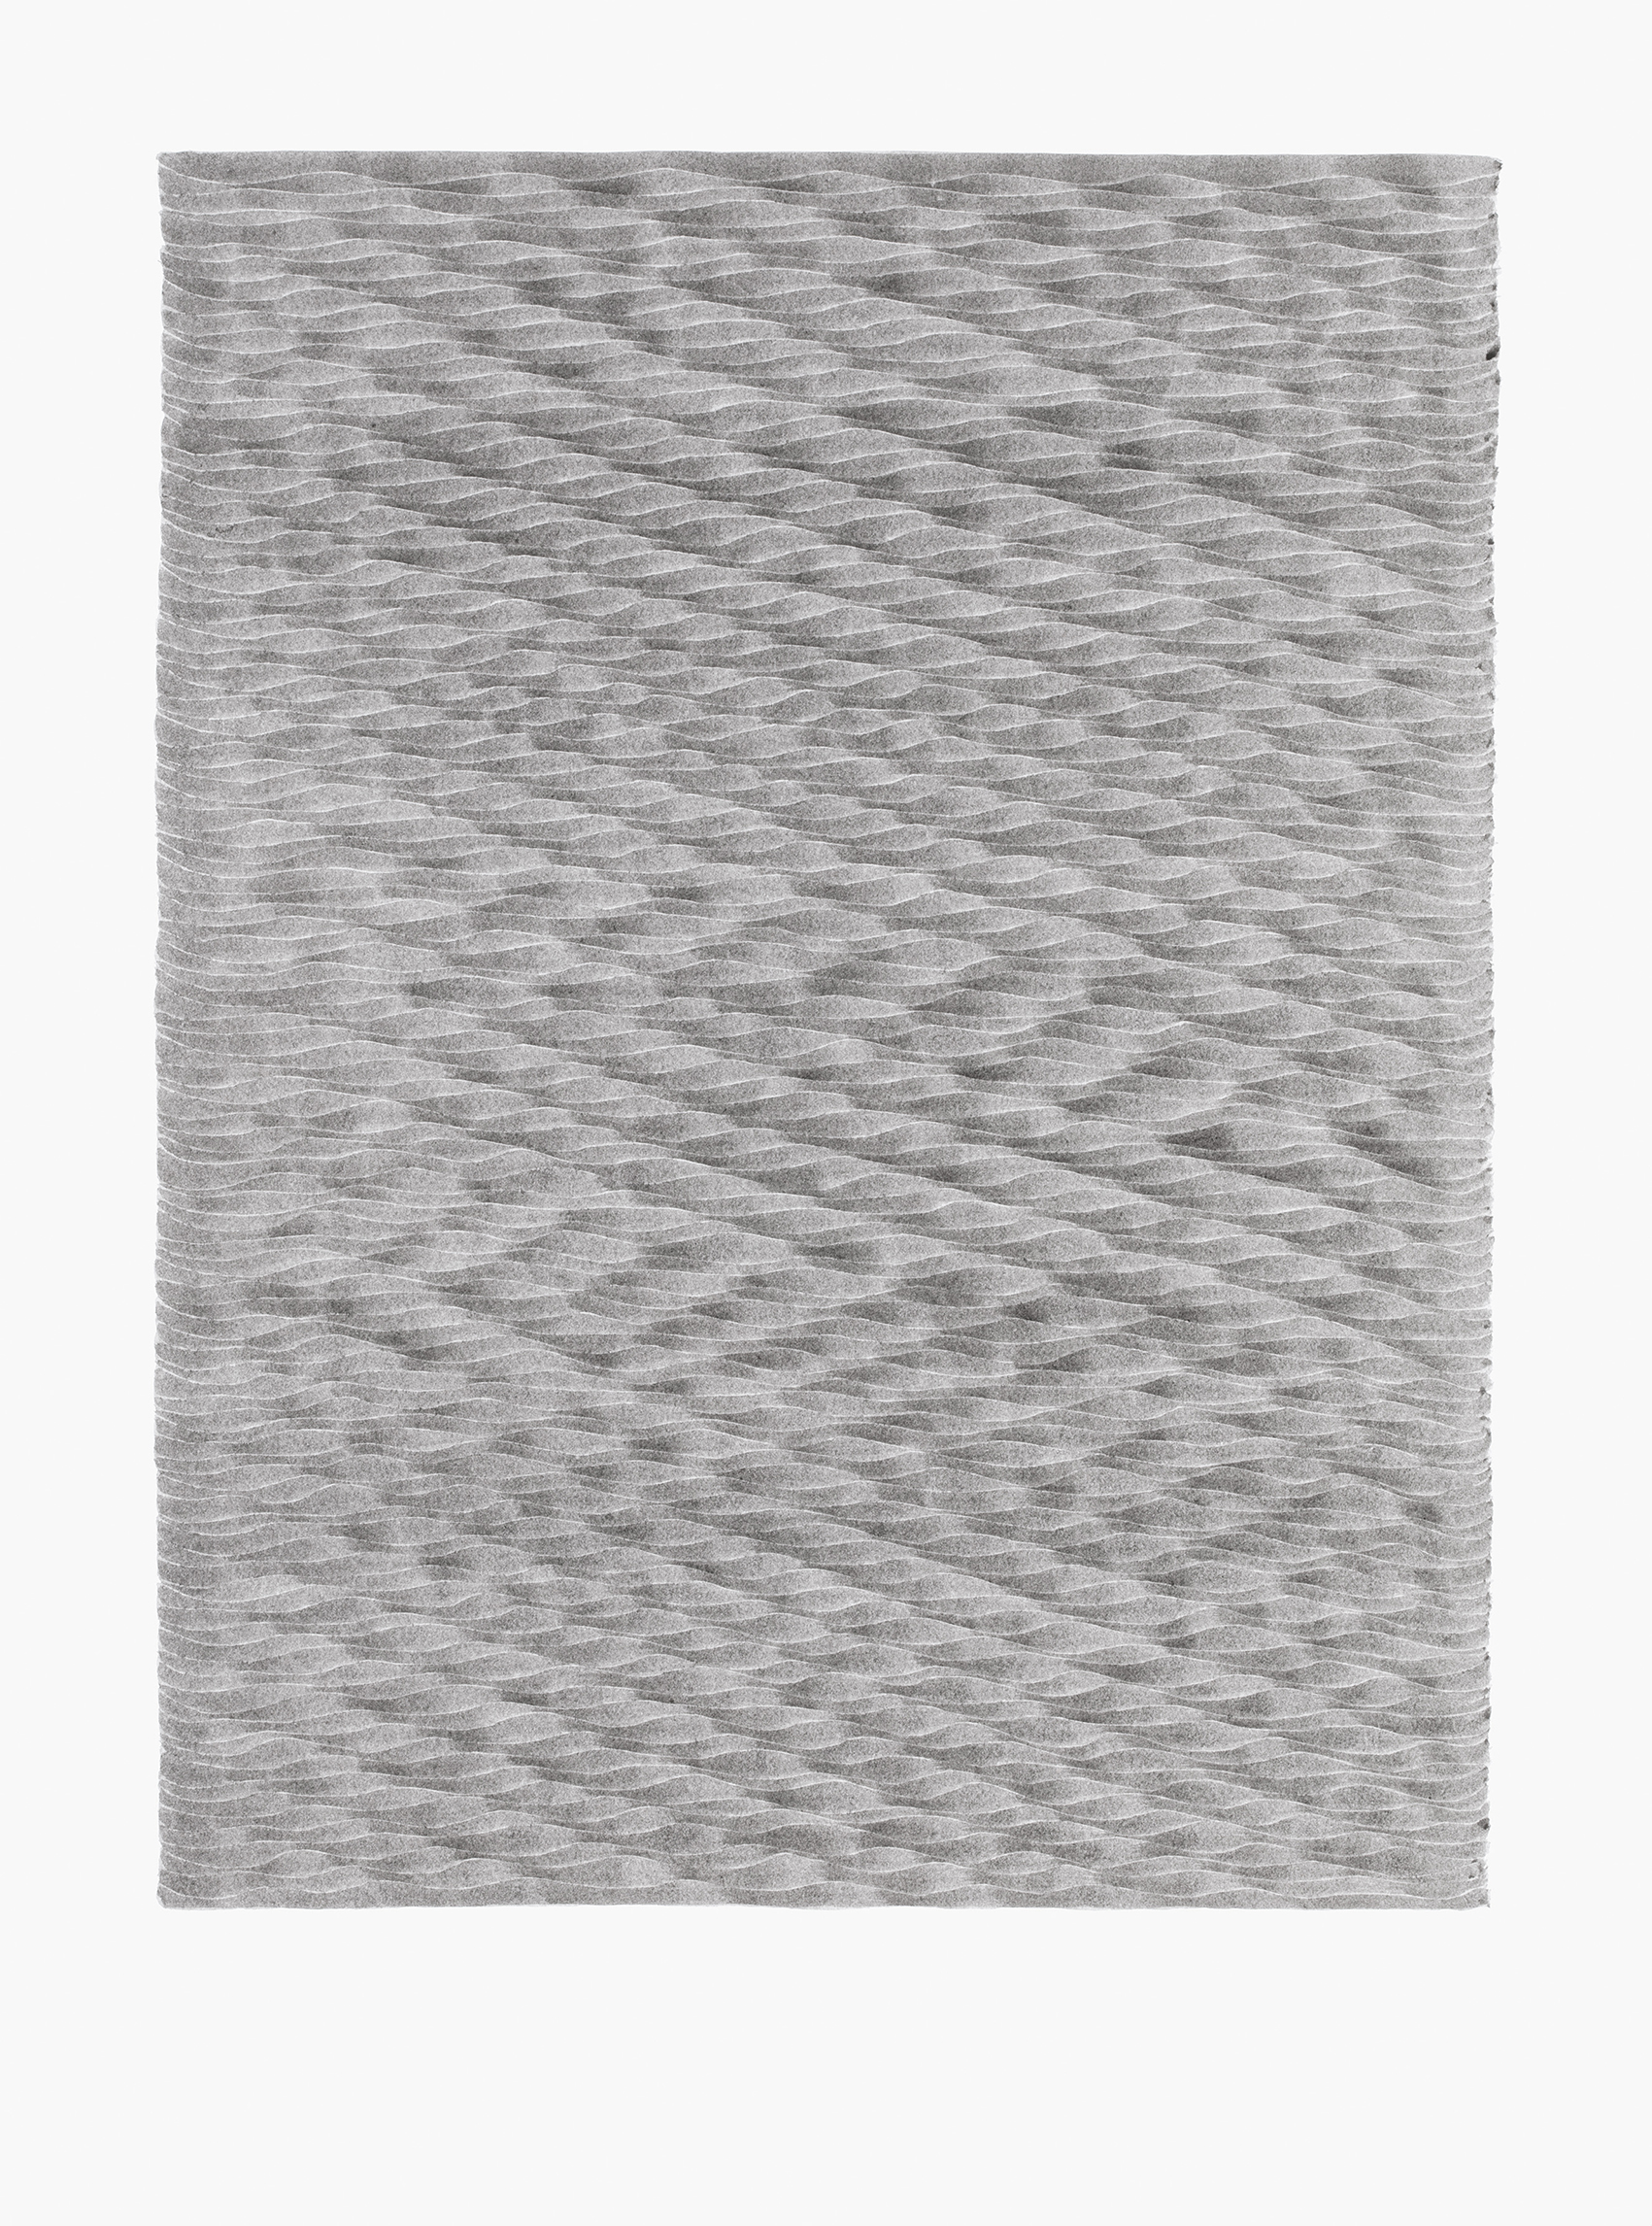 LUISE VON ROHDEN Wellen (hh d/wr 109/0), 2018, Tusche auf Papier, 78 x 58 cm, Foto: Thomas Bruns